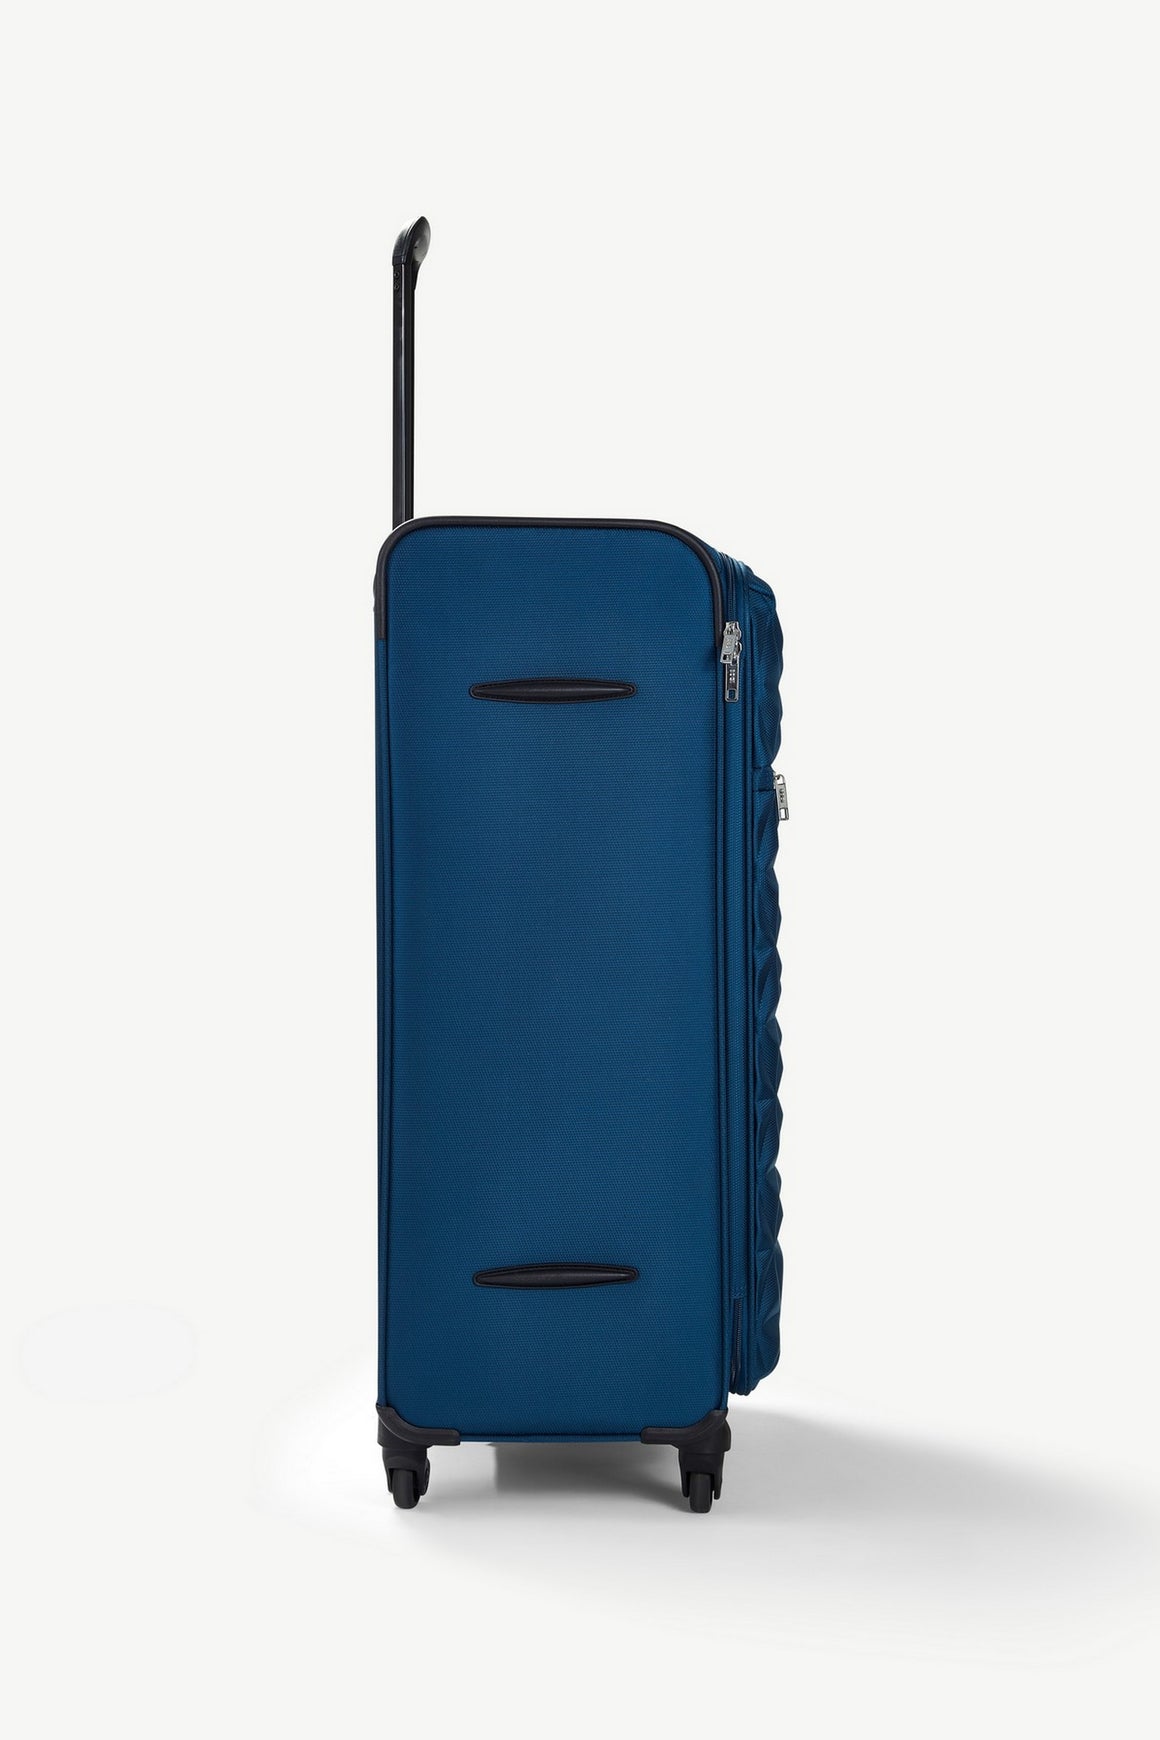 Jewel Set of 3 Suitcases